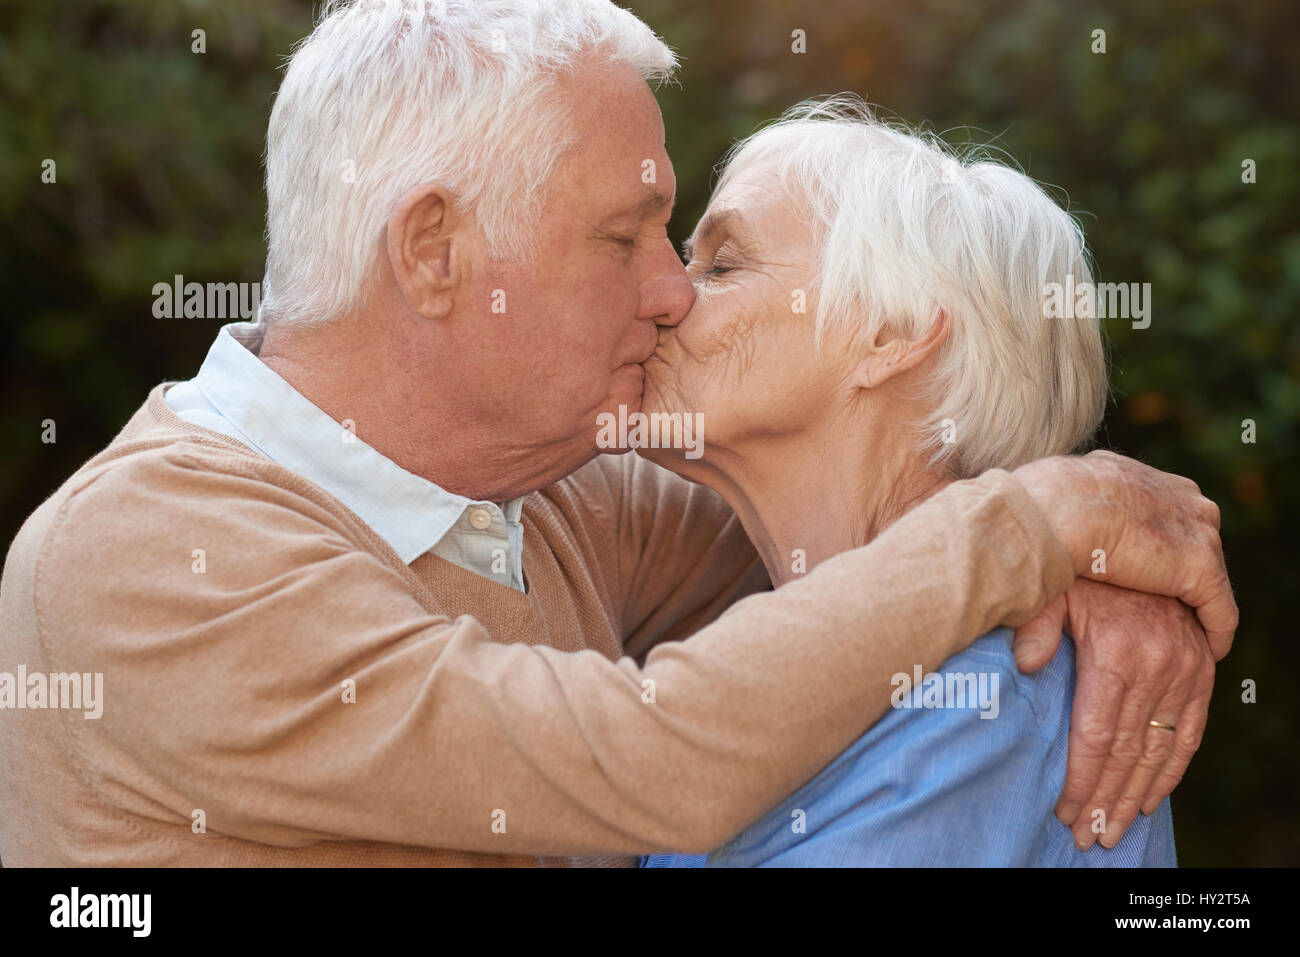 Les personnes âgées dans l'amour affectueux accolades et embrassades à l'extérieur Banque D'Images